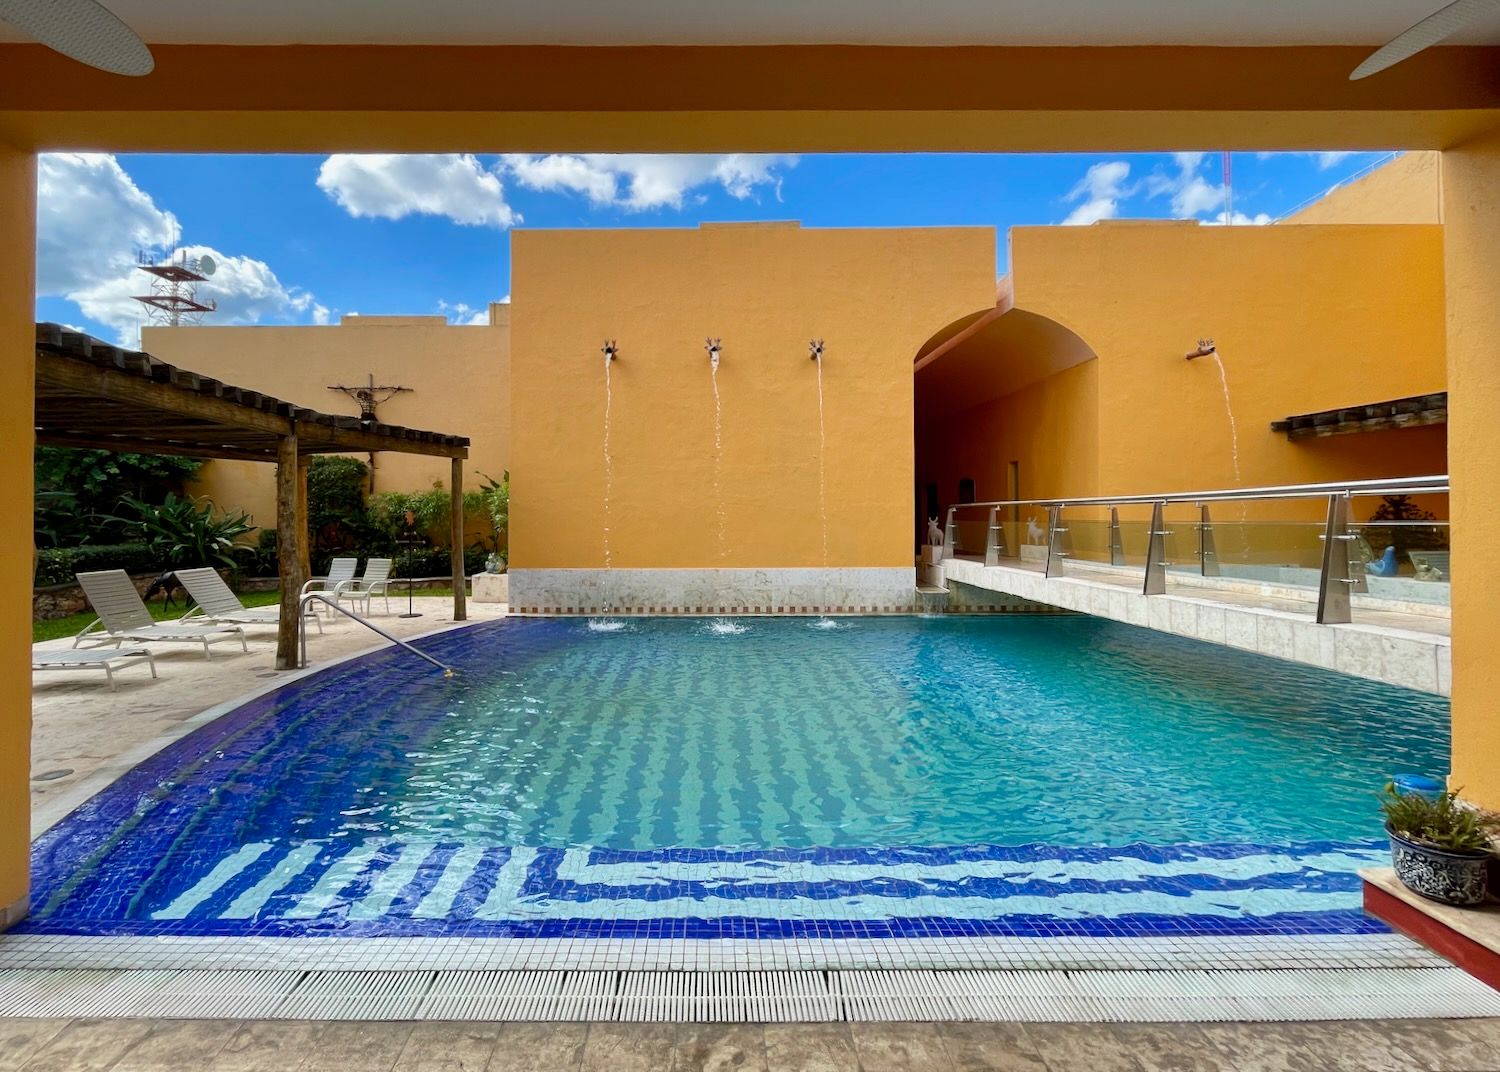 Pool at the Casa de los Venado